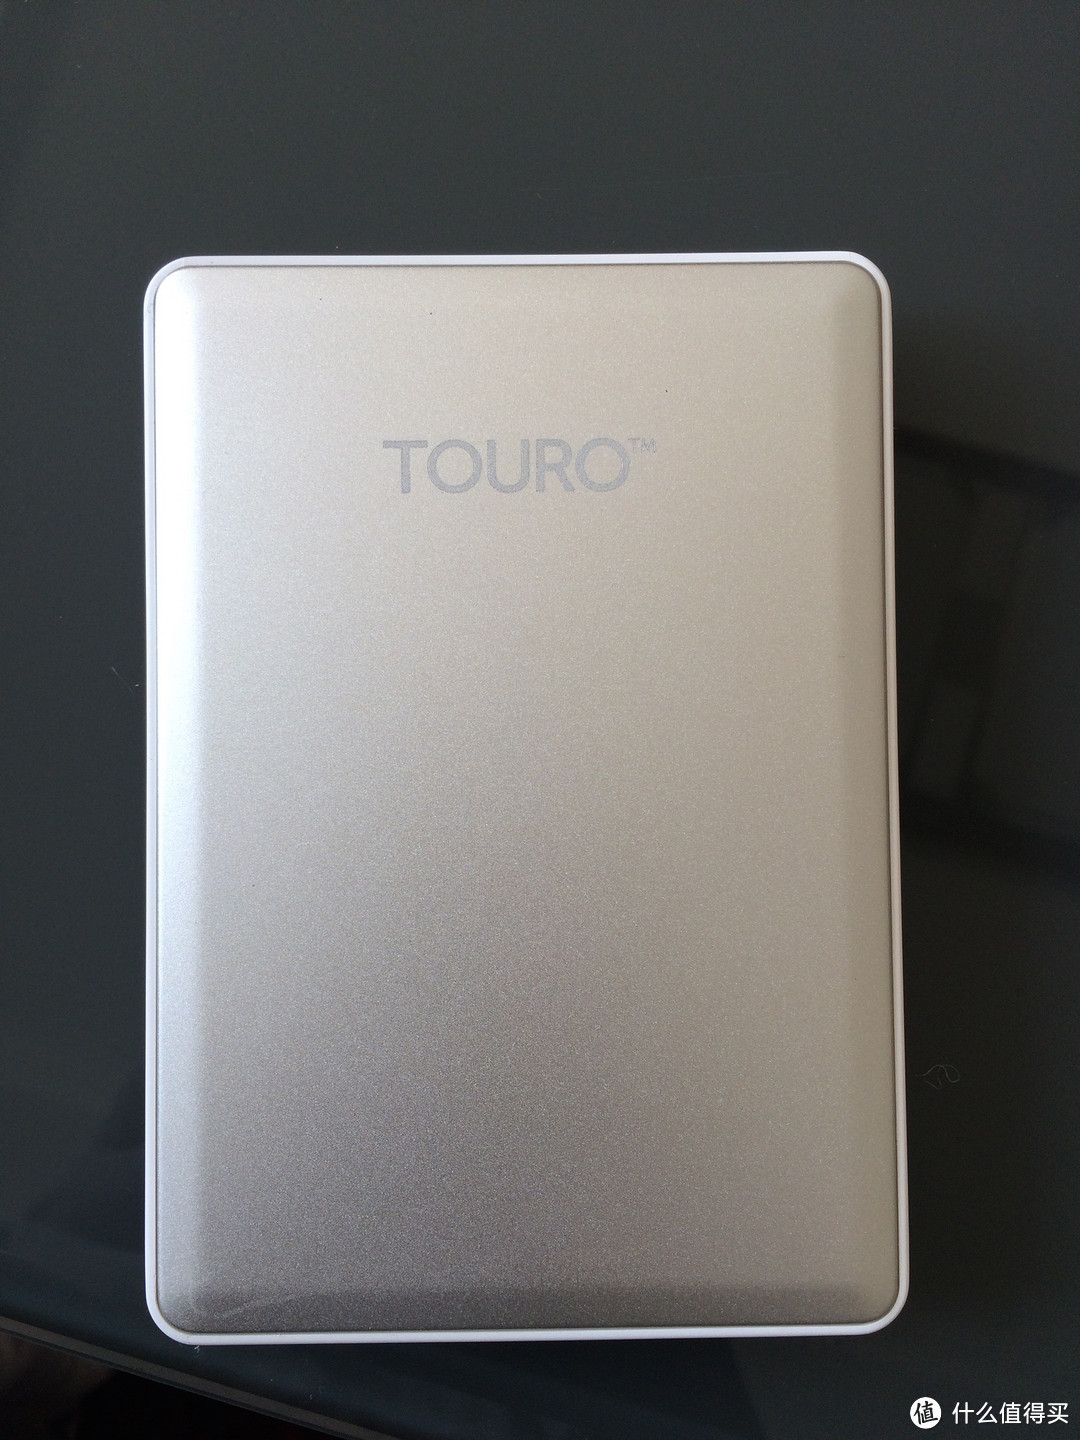 7200转的移动硬盘 — HGST 日立 0S03731 TOURO S 7200 转 1TB 2.5英寸 USB 3.0 移动硬盘